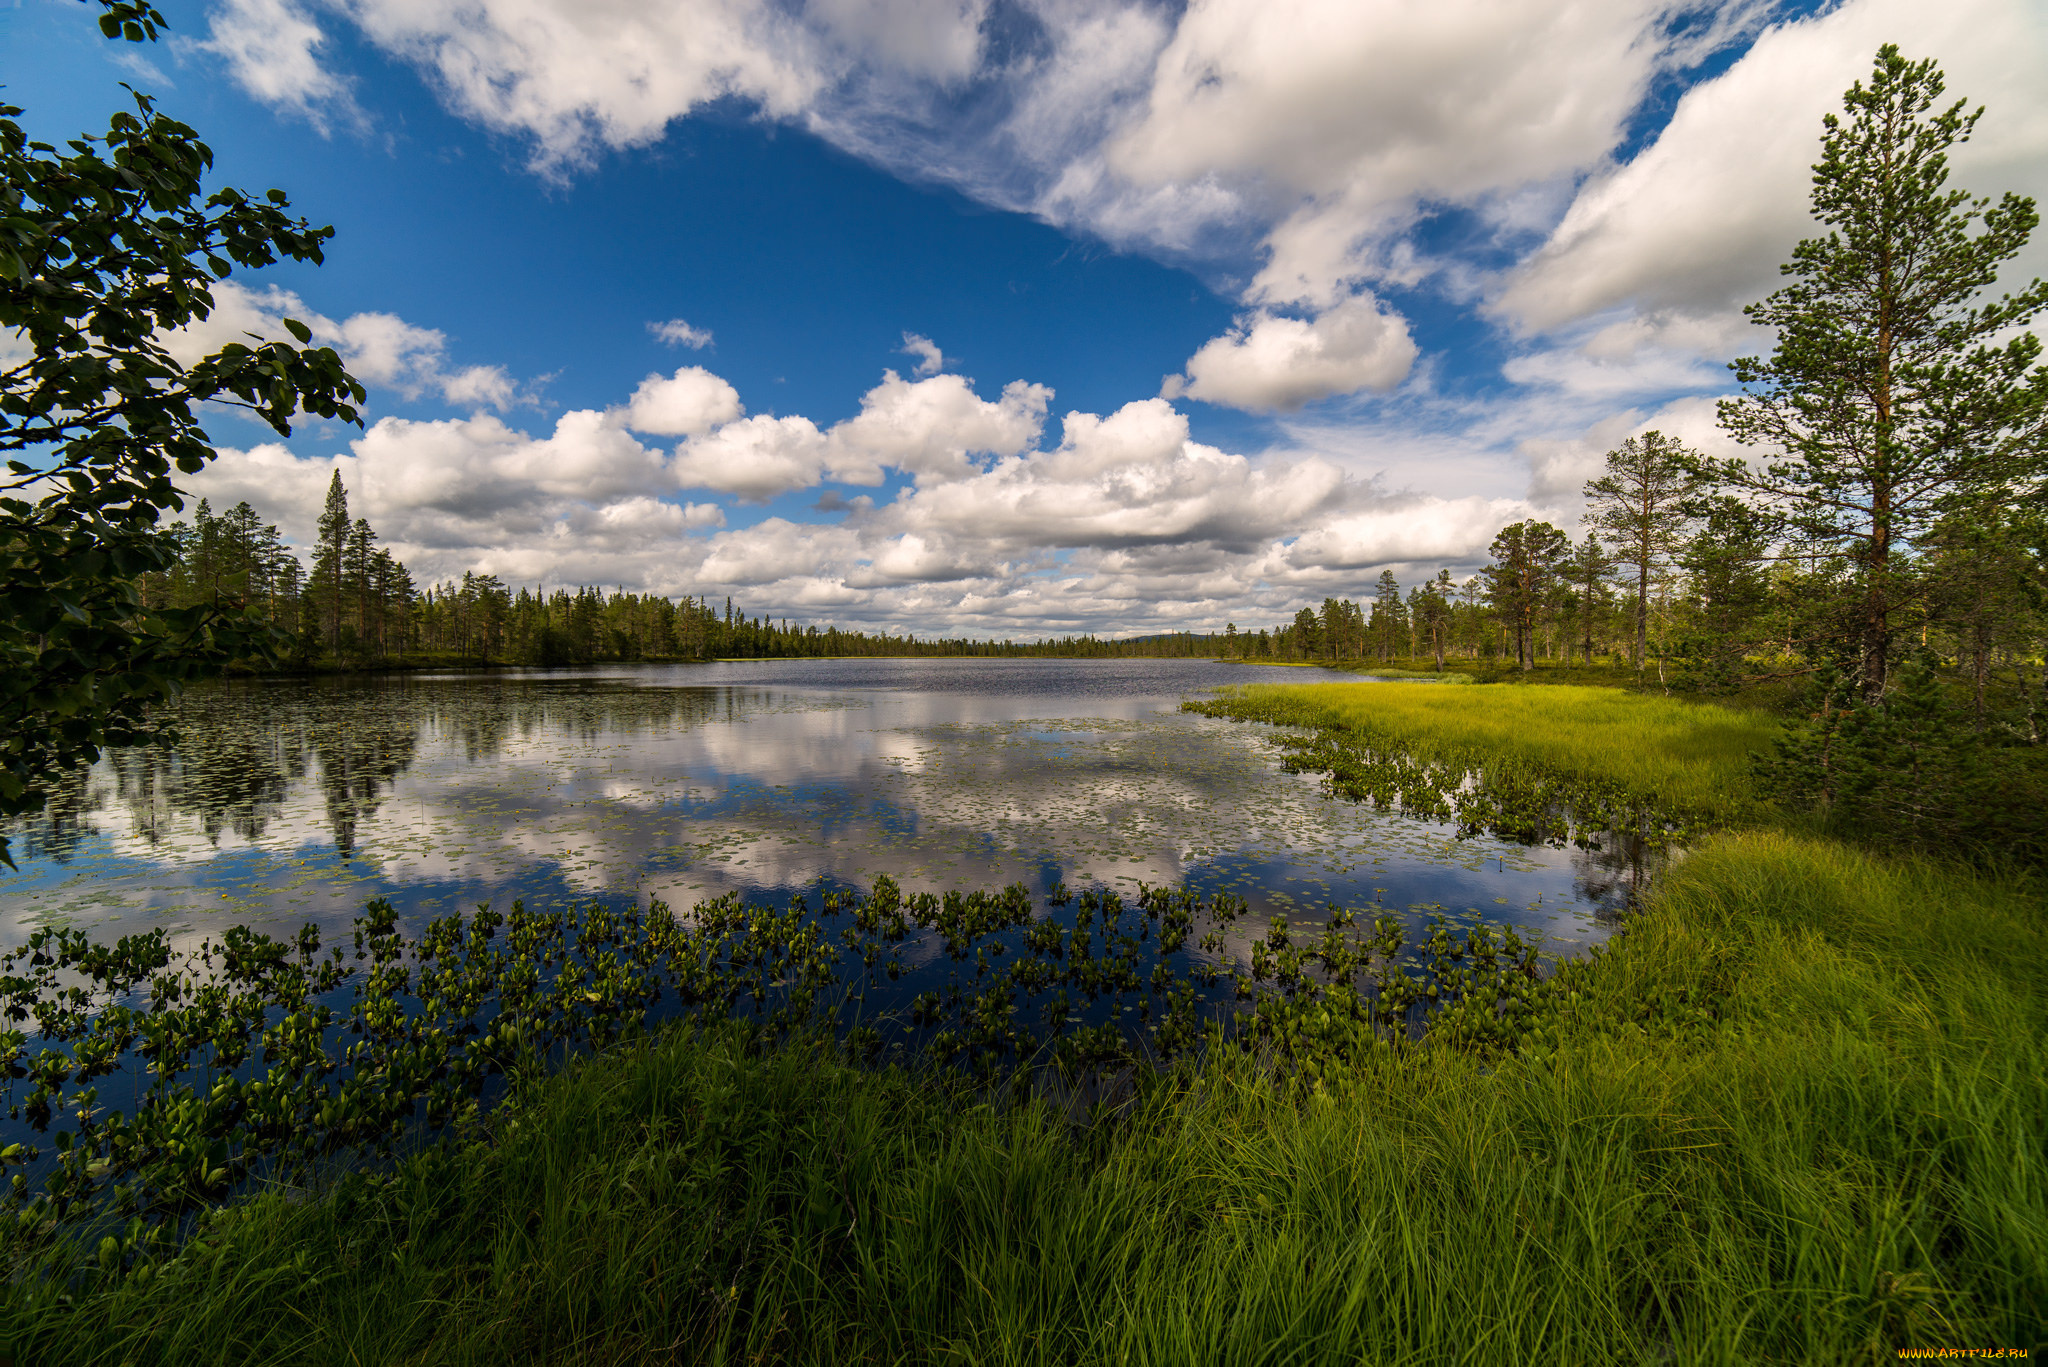 Местоположение и природа. Пейзажи природы. Пейзажи России. Русская природа. Озеро в лесу.